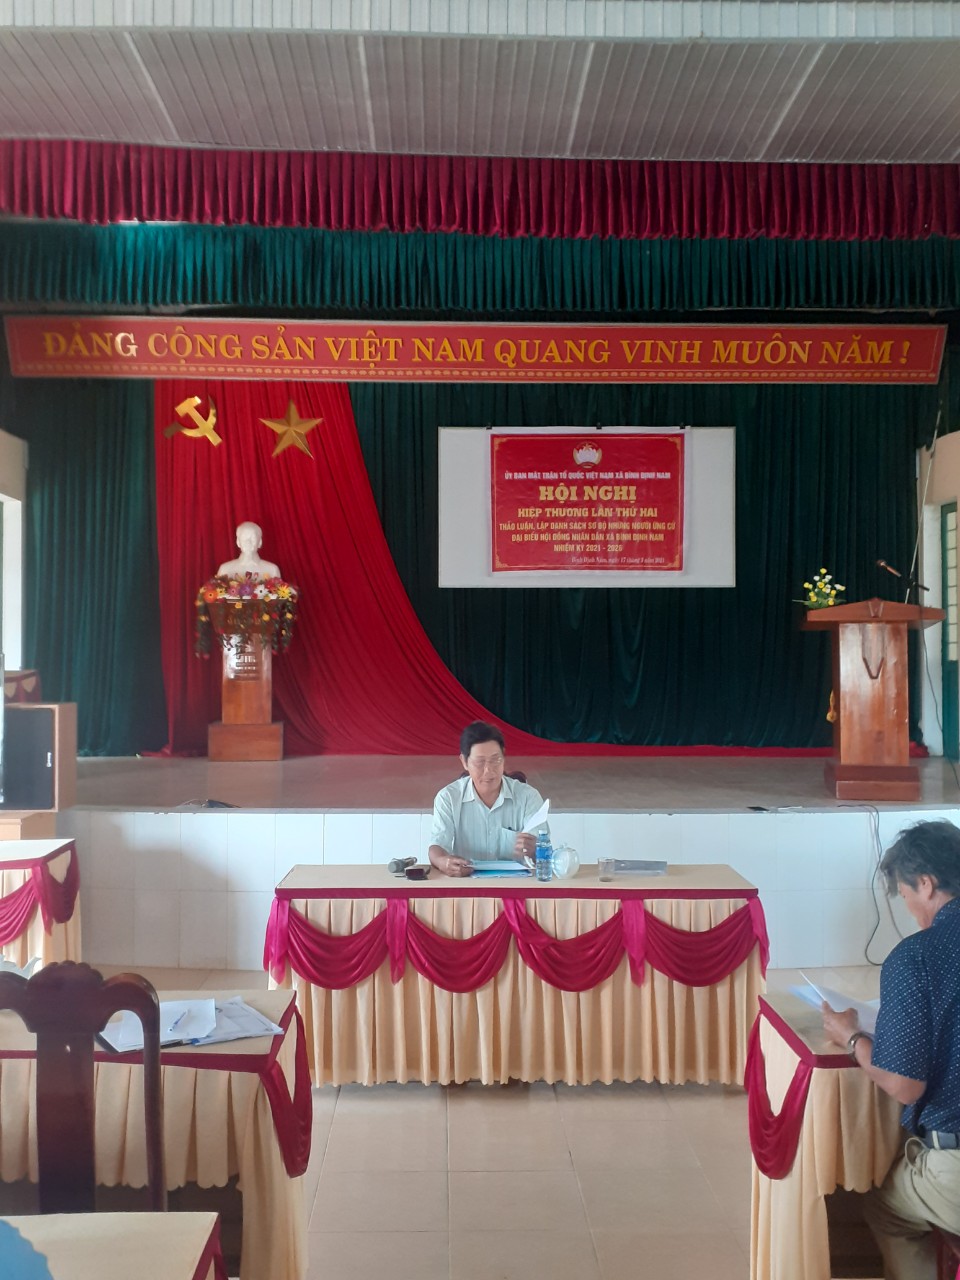 Hội nghị hiệp thương lần thứ hai xã Bình Định Nam